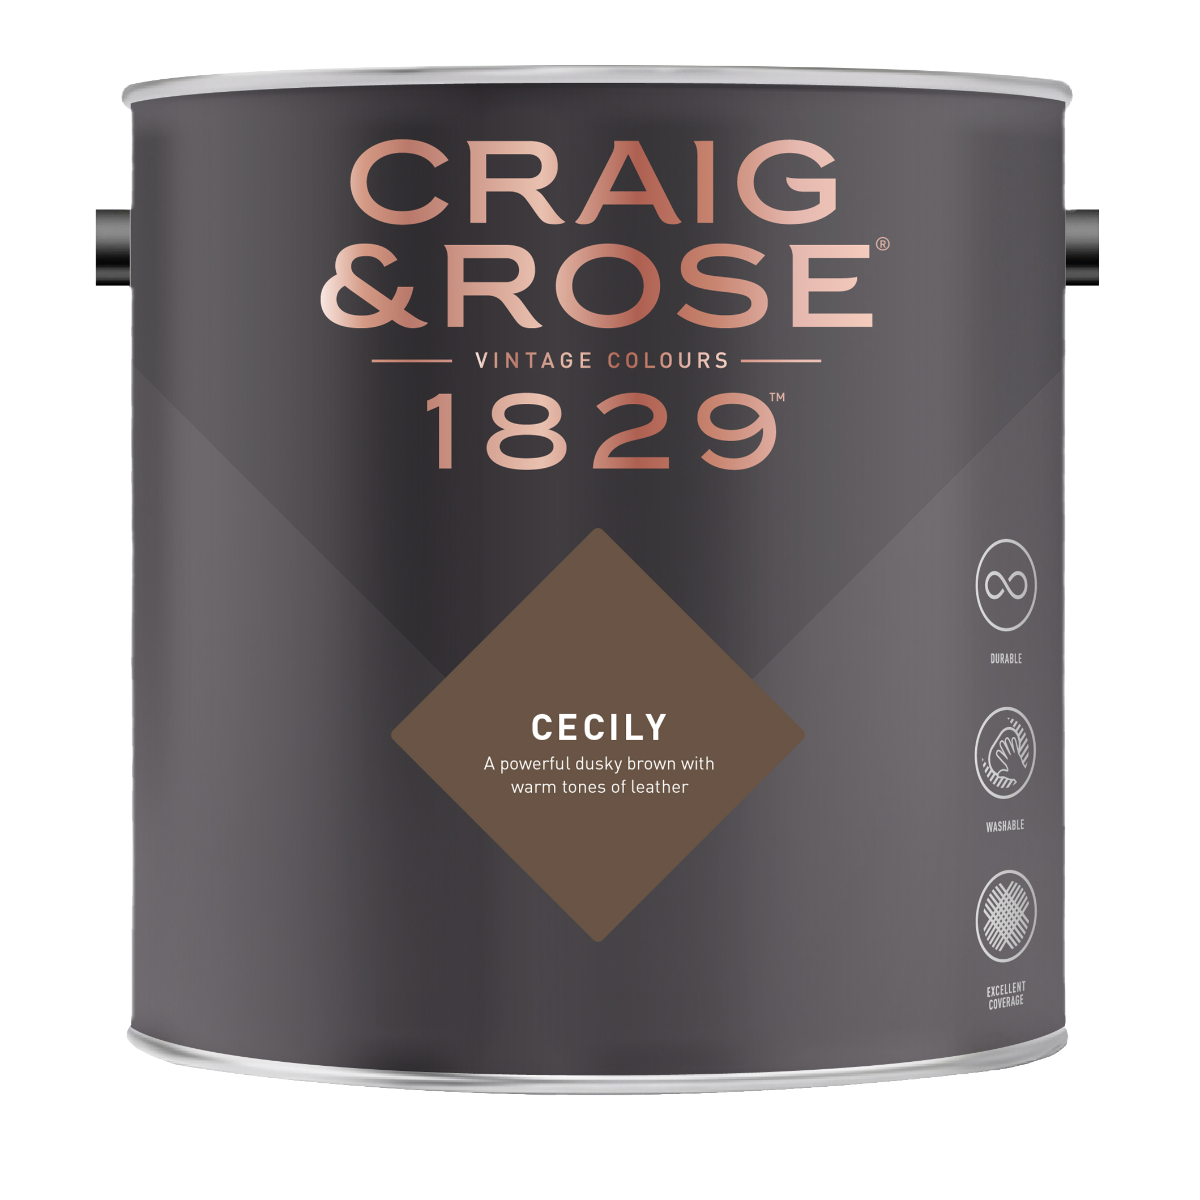 Craig & Rose 1829 Cecily